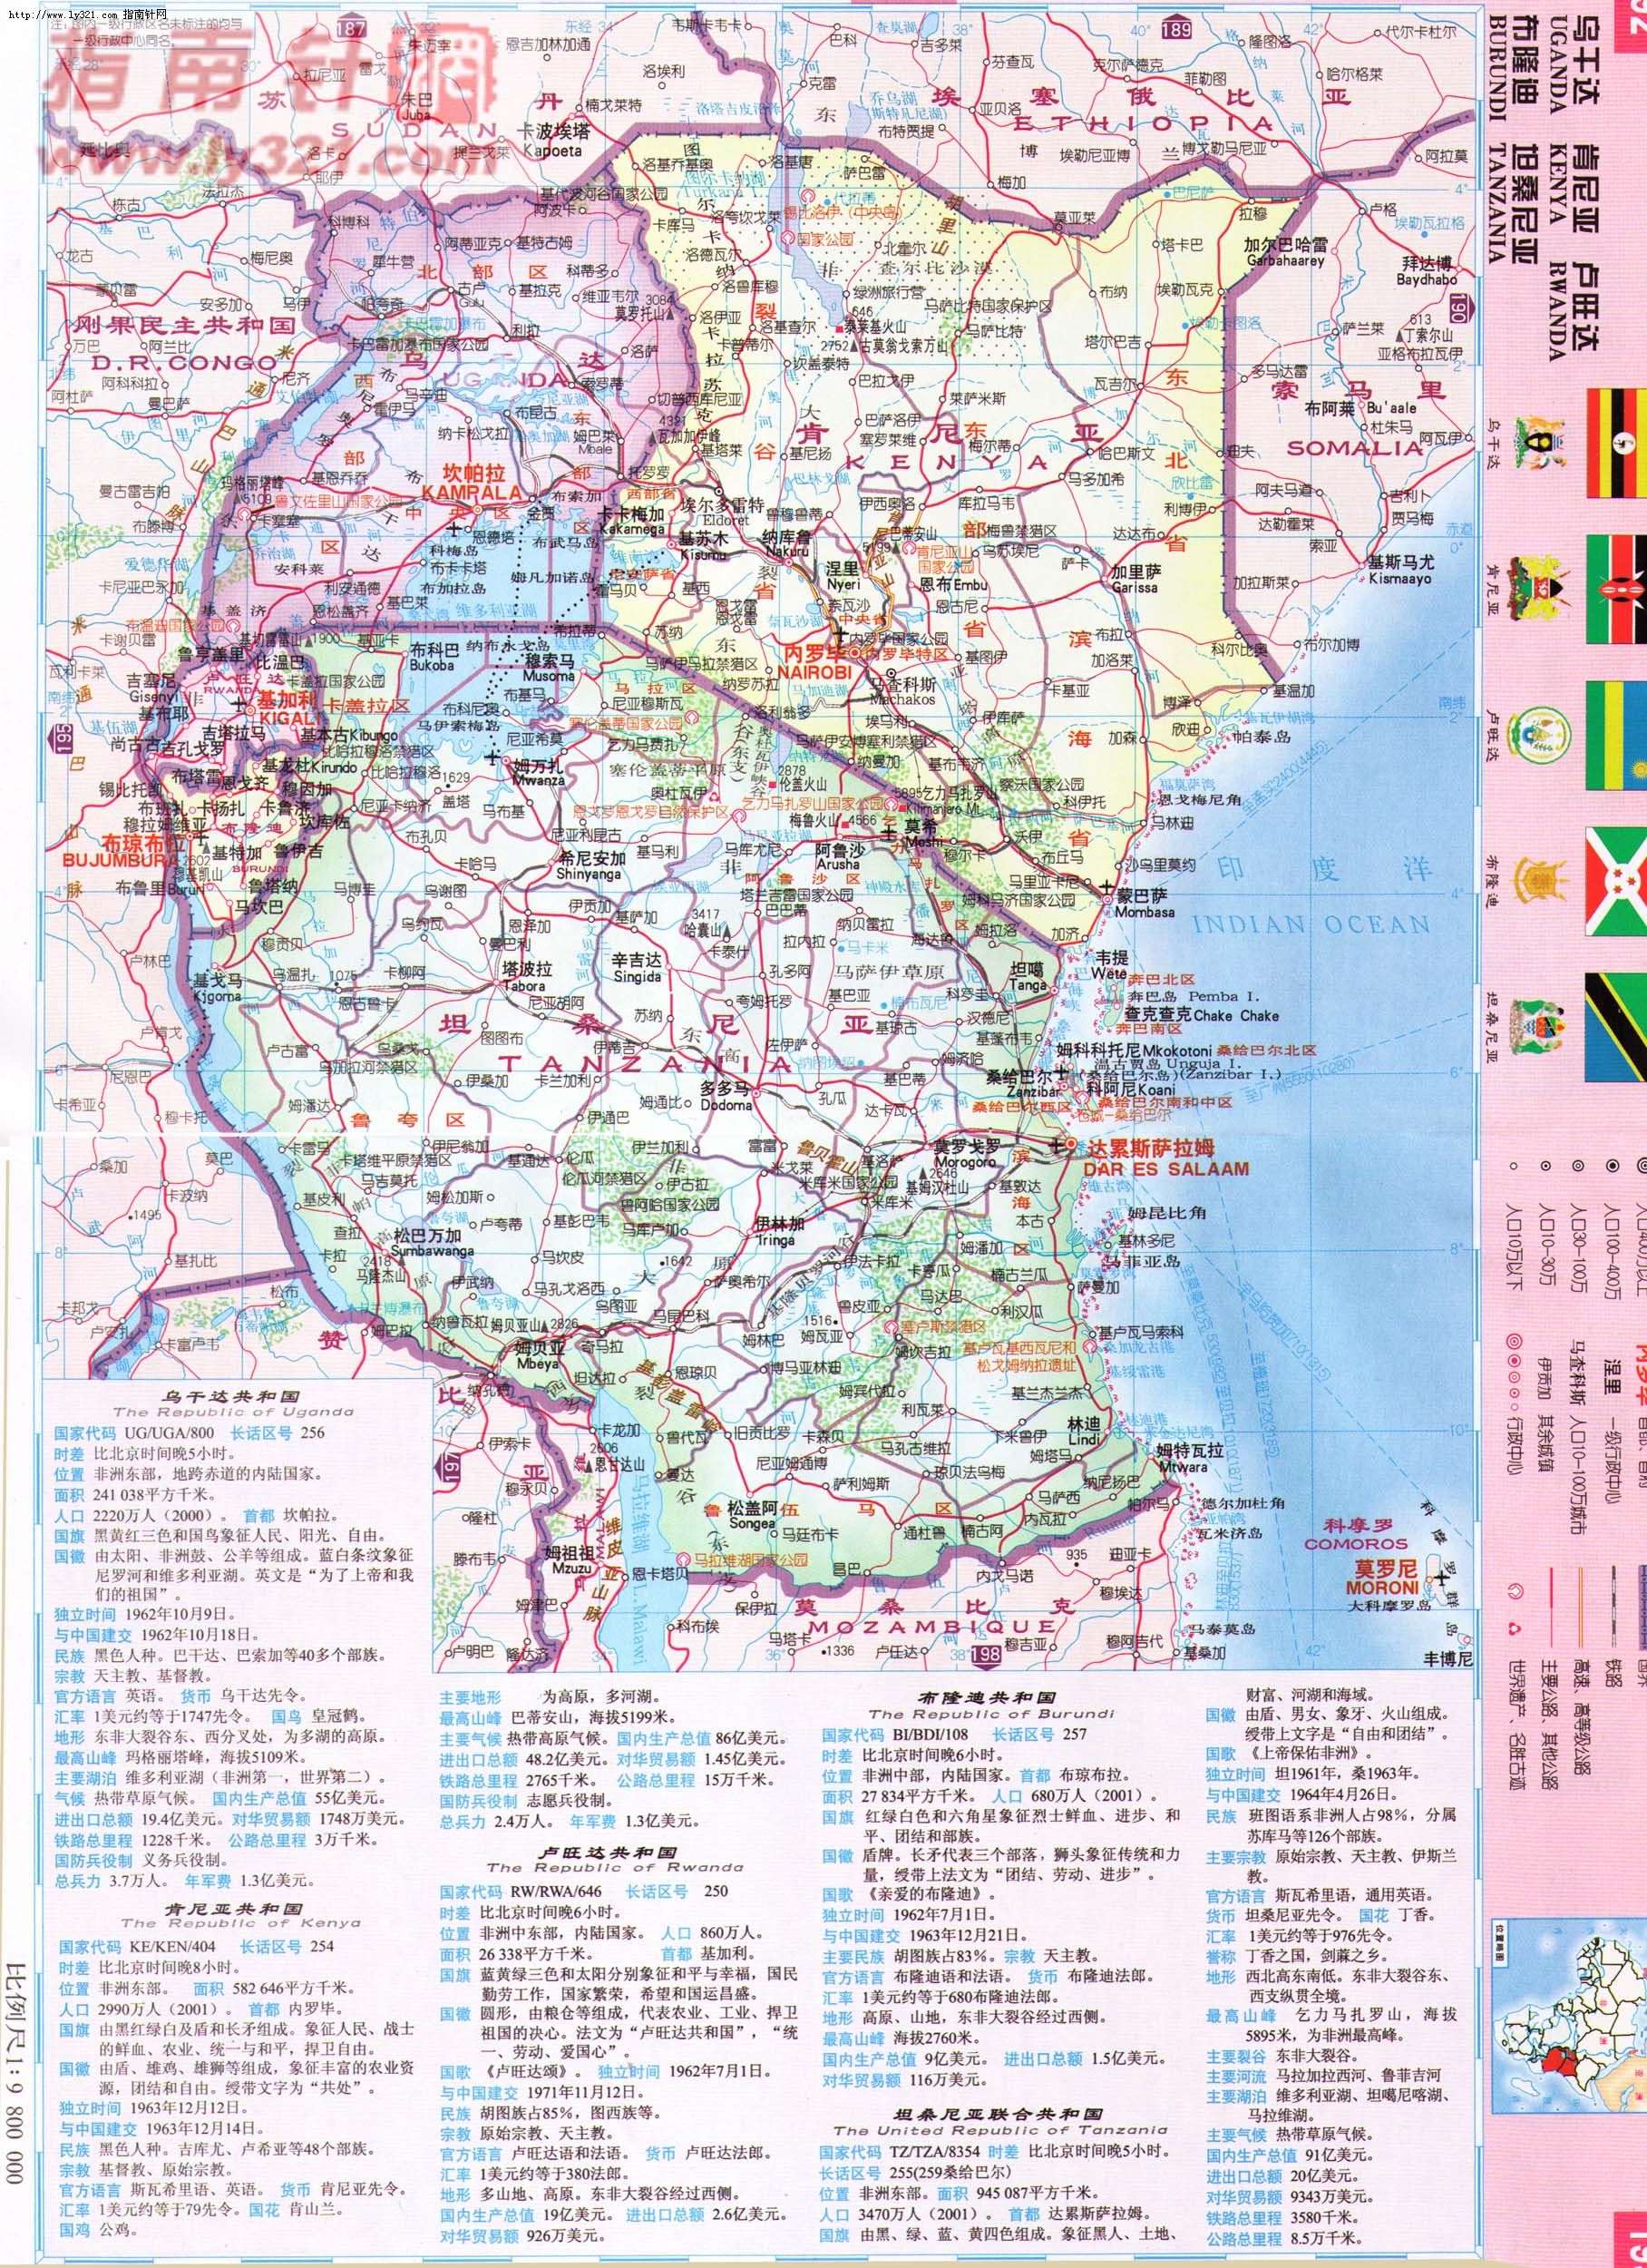 布隆迪地图